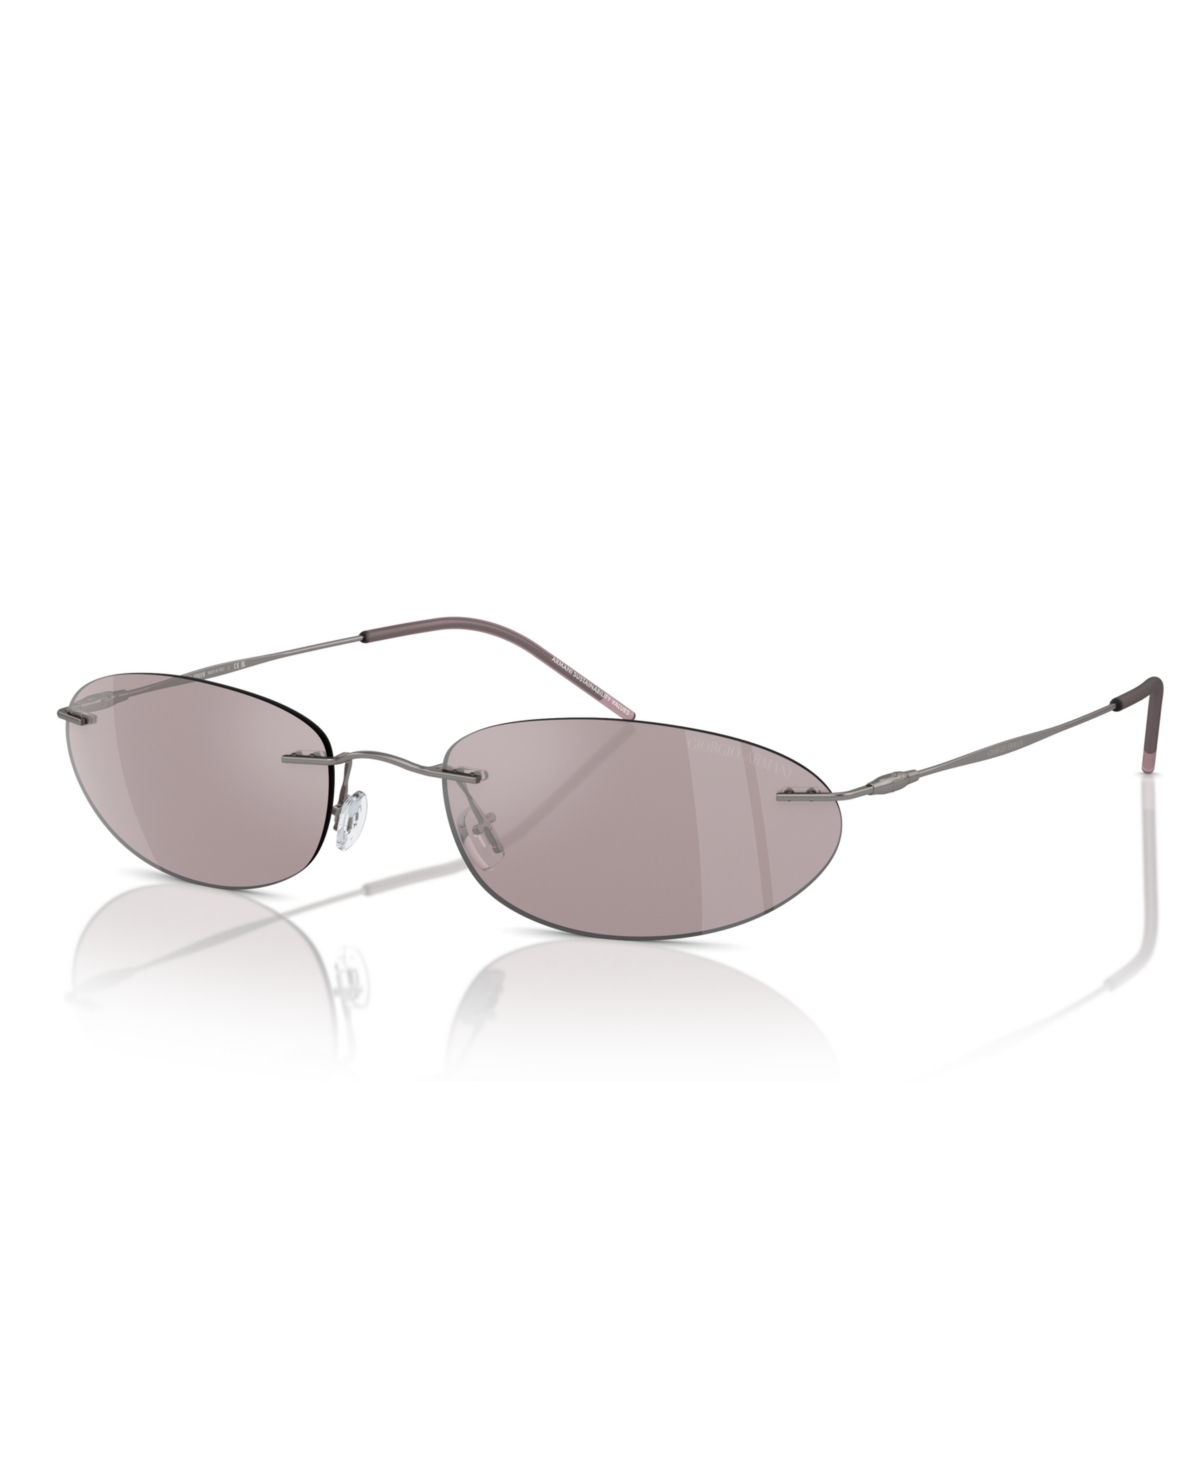 Giorgio Armani Women's Sunglasses, Ar1508m In Gray